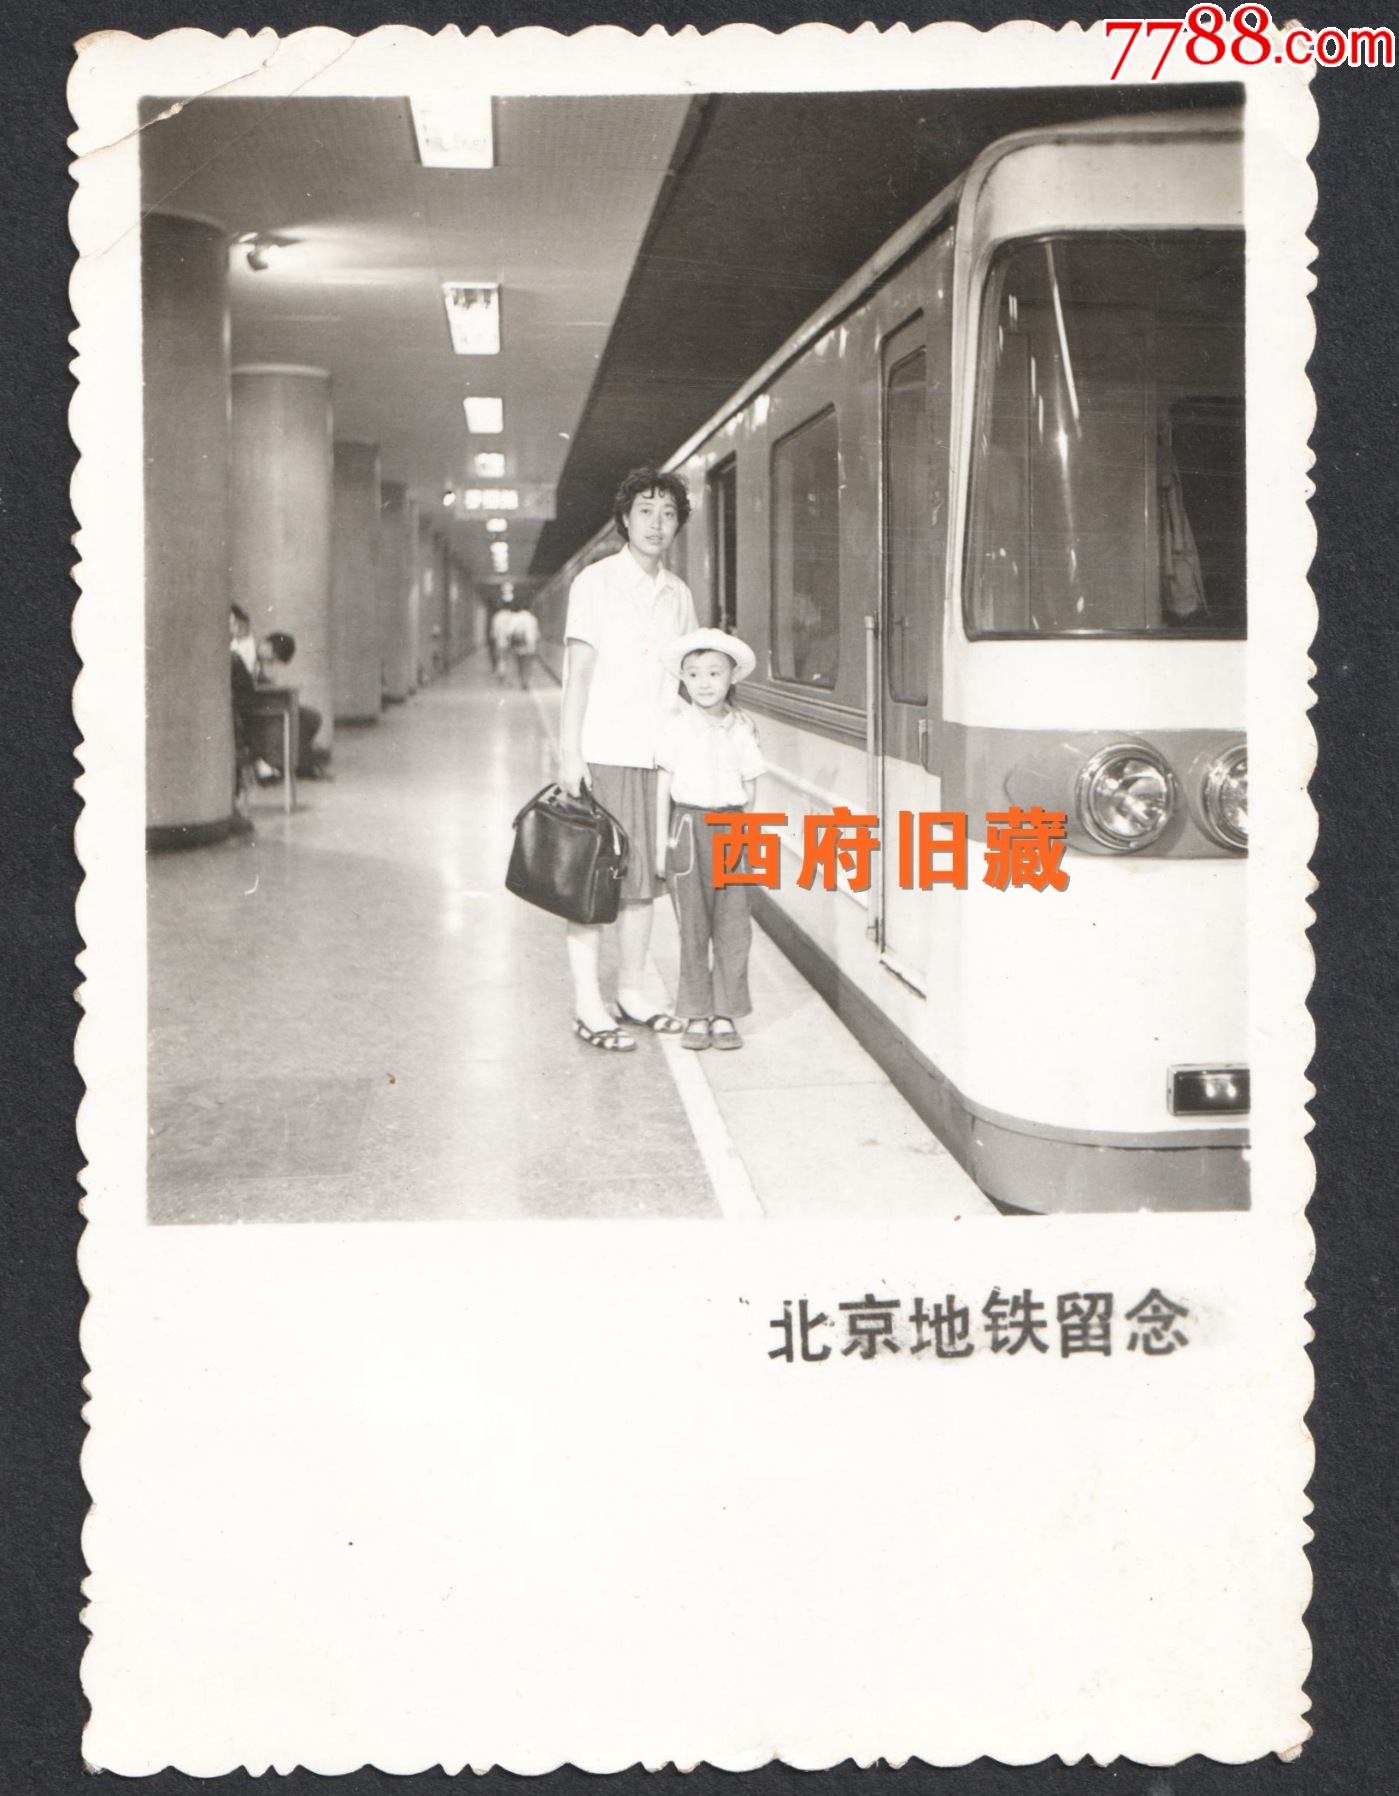 1980年乘坐北京地铁留念老照片